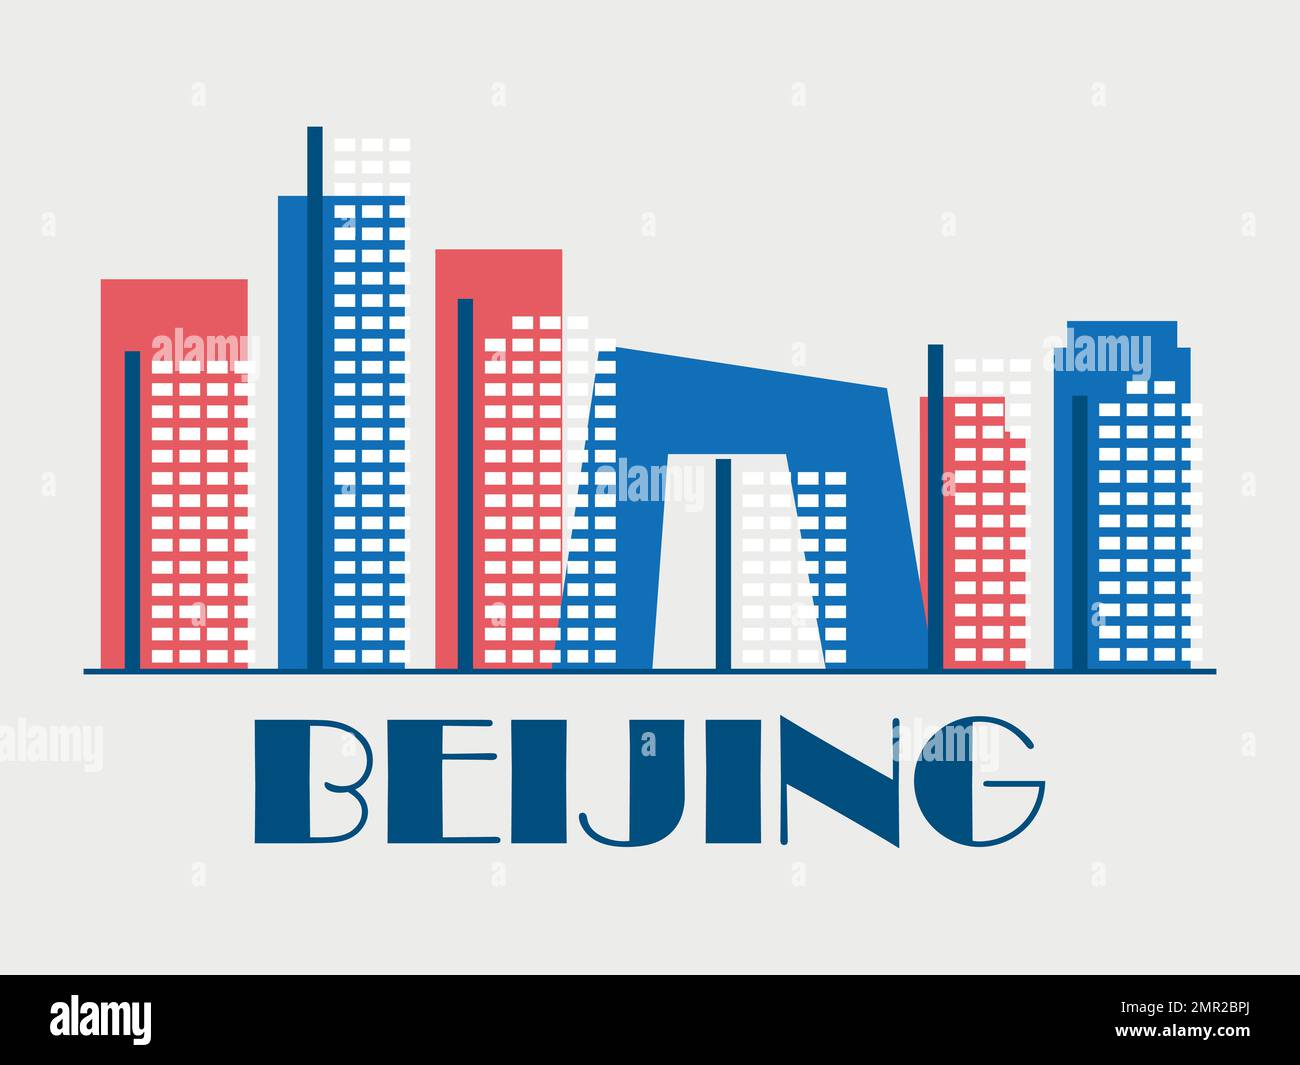 Pechino paesaggio in stile vintage. Bandiera retrò della città di Pechino con grattacieli in stile lineare. Design per stampa, poster e materiale promozionale Illustrazione Vettoriale